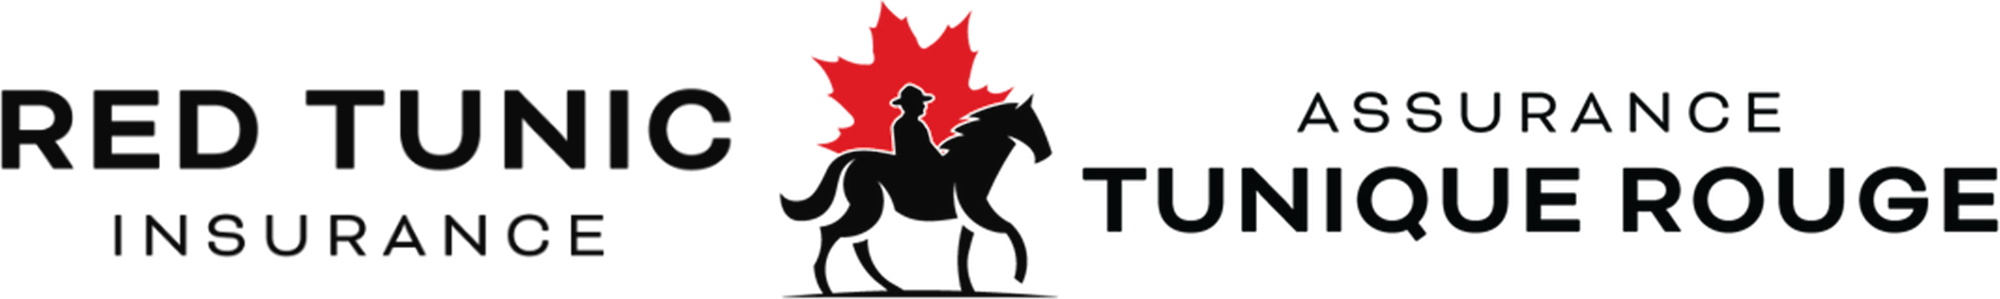 logo assurance tunique rouge